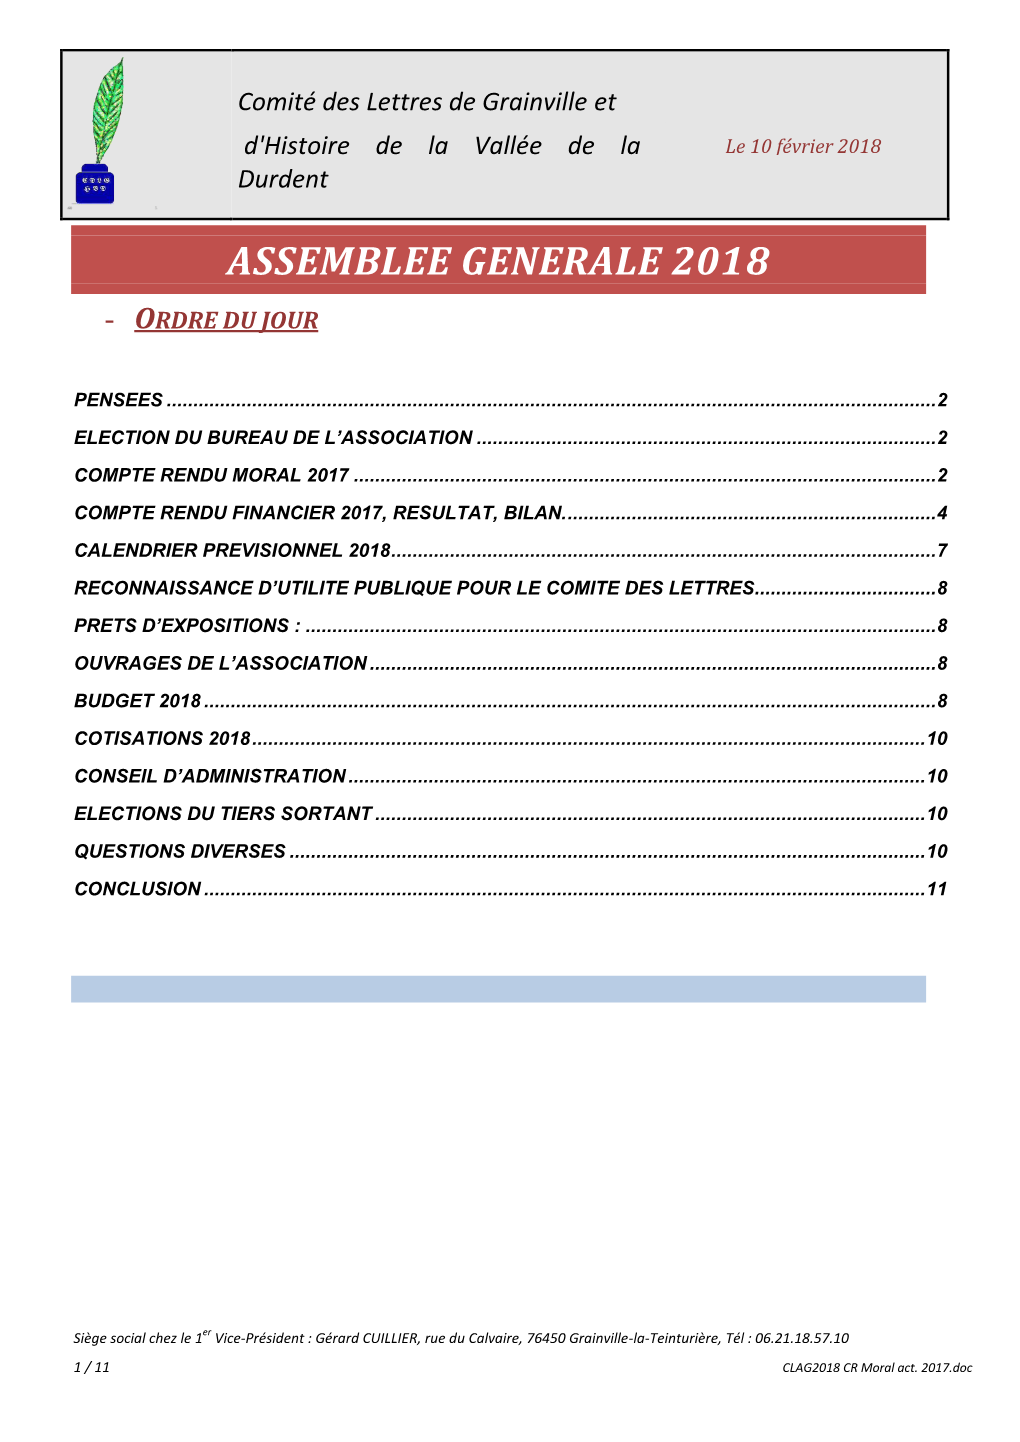 Comité Des Lettres De Grainville Et D'histoire De La Vallée De La Le 10 Février 2018 Durdent